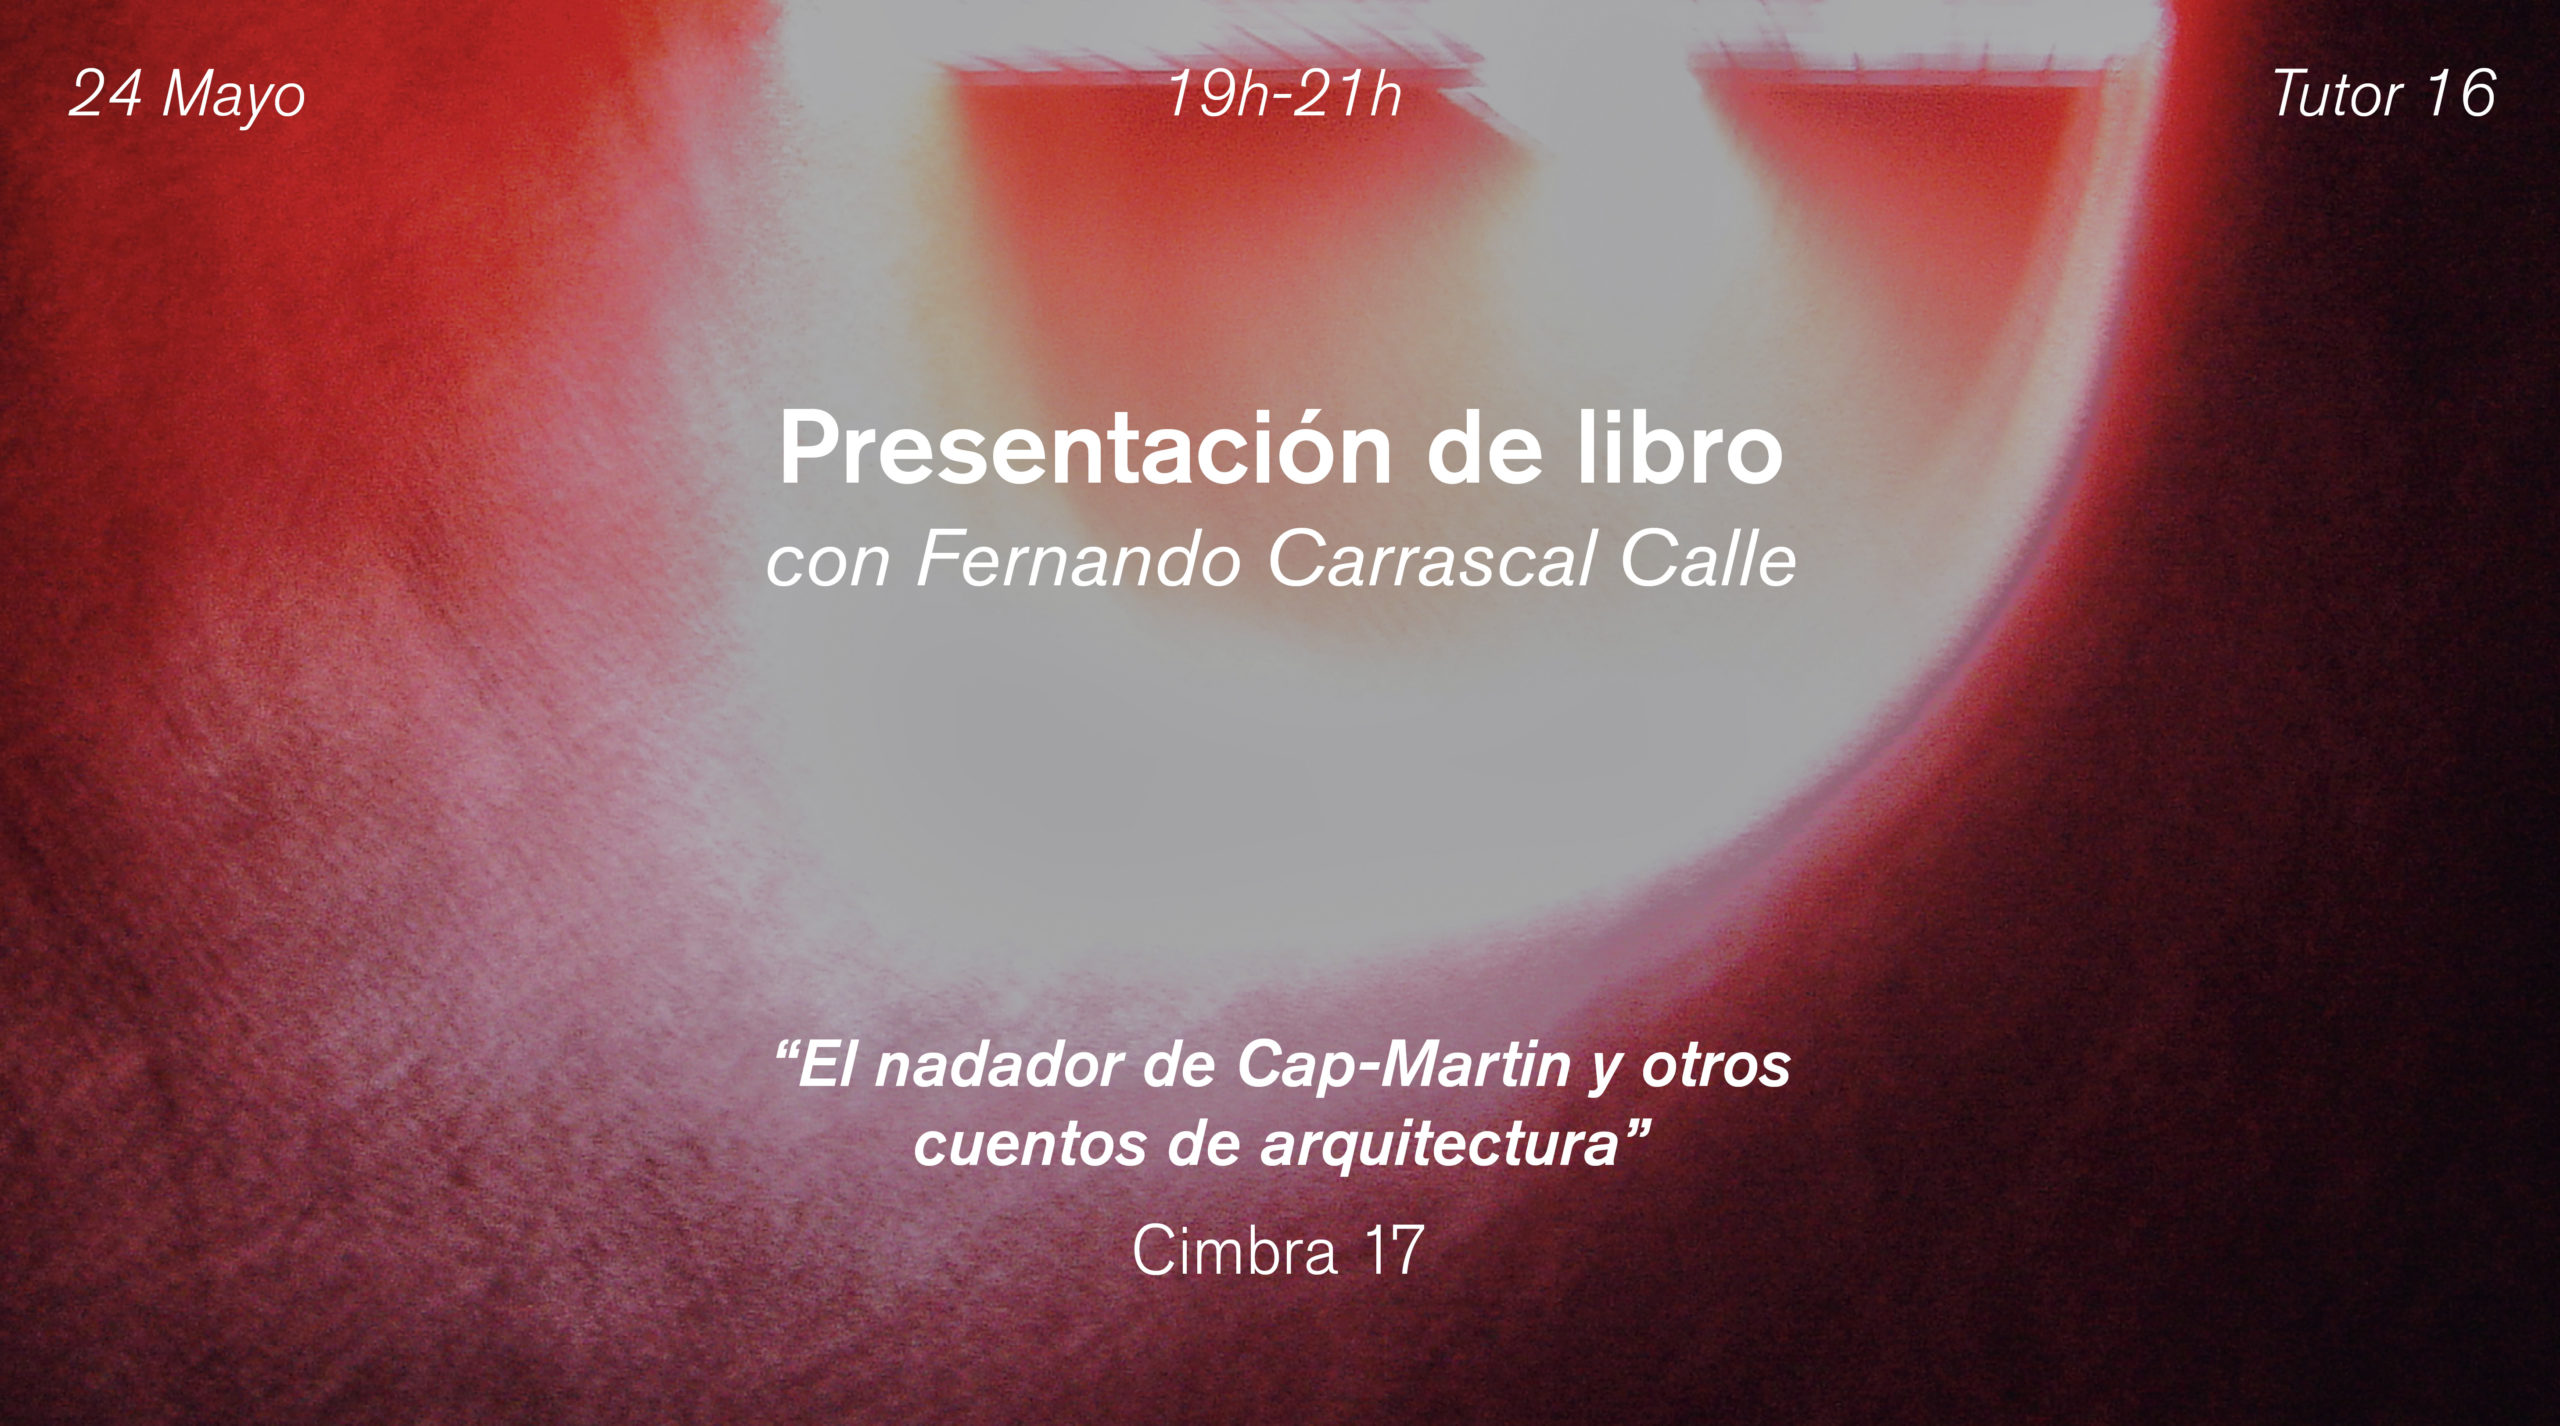 Presentación de libro: “El nadador de Cap-Martin y otros cuentos de arquitectura”, de Fernando Carrascal Calle